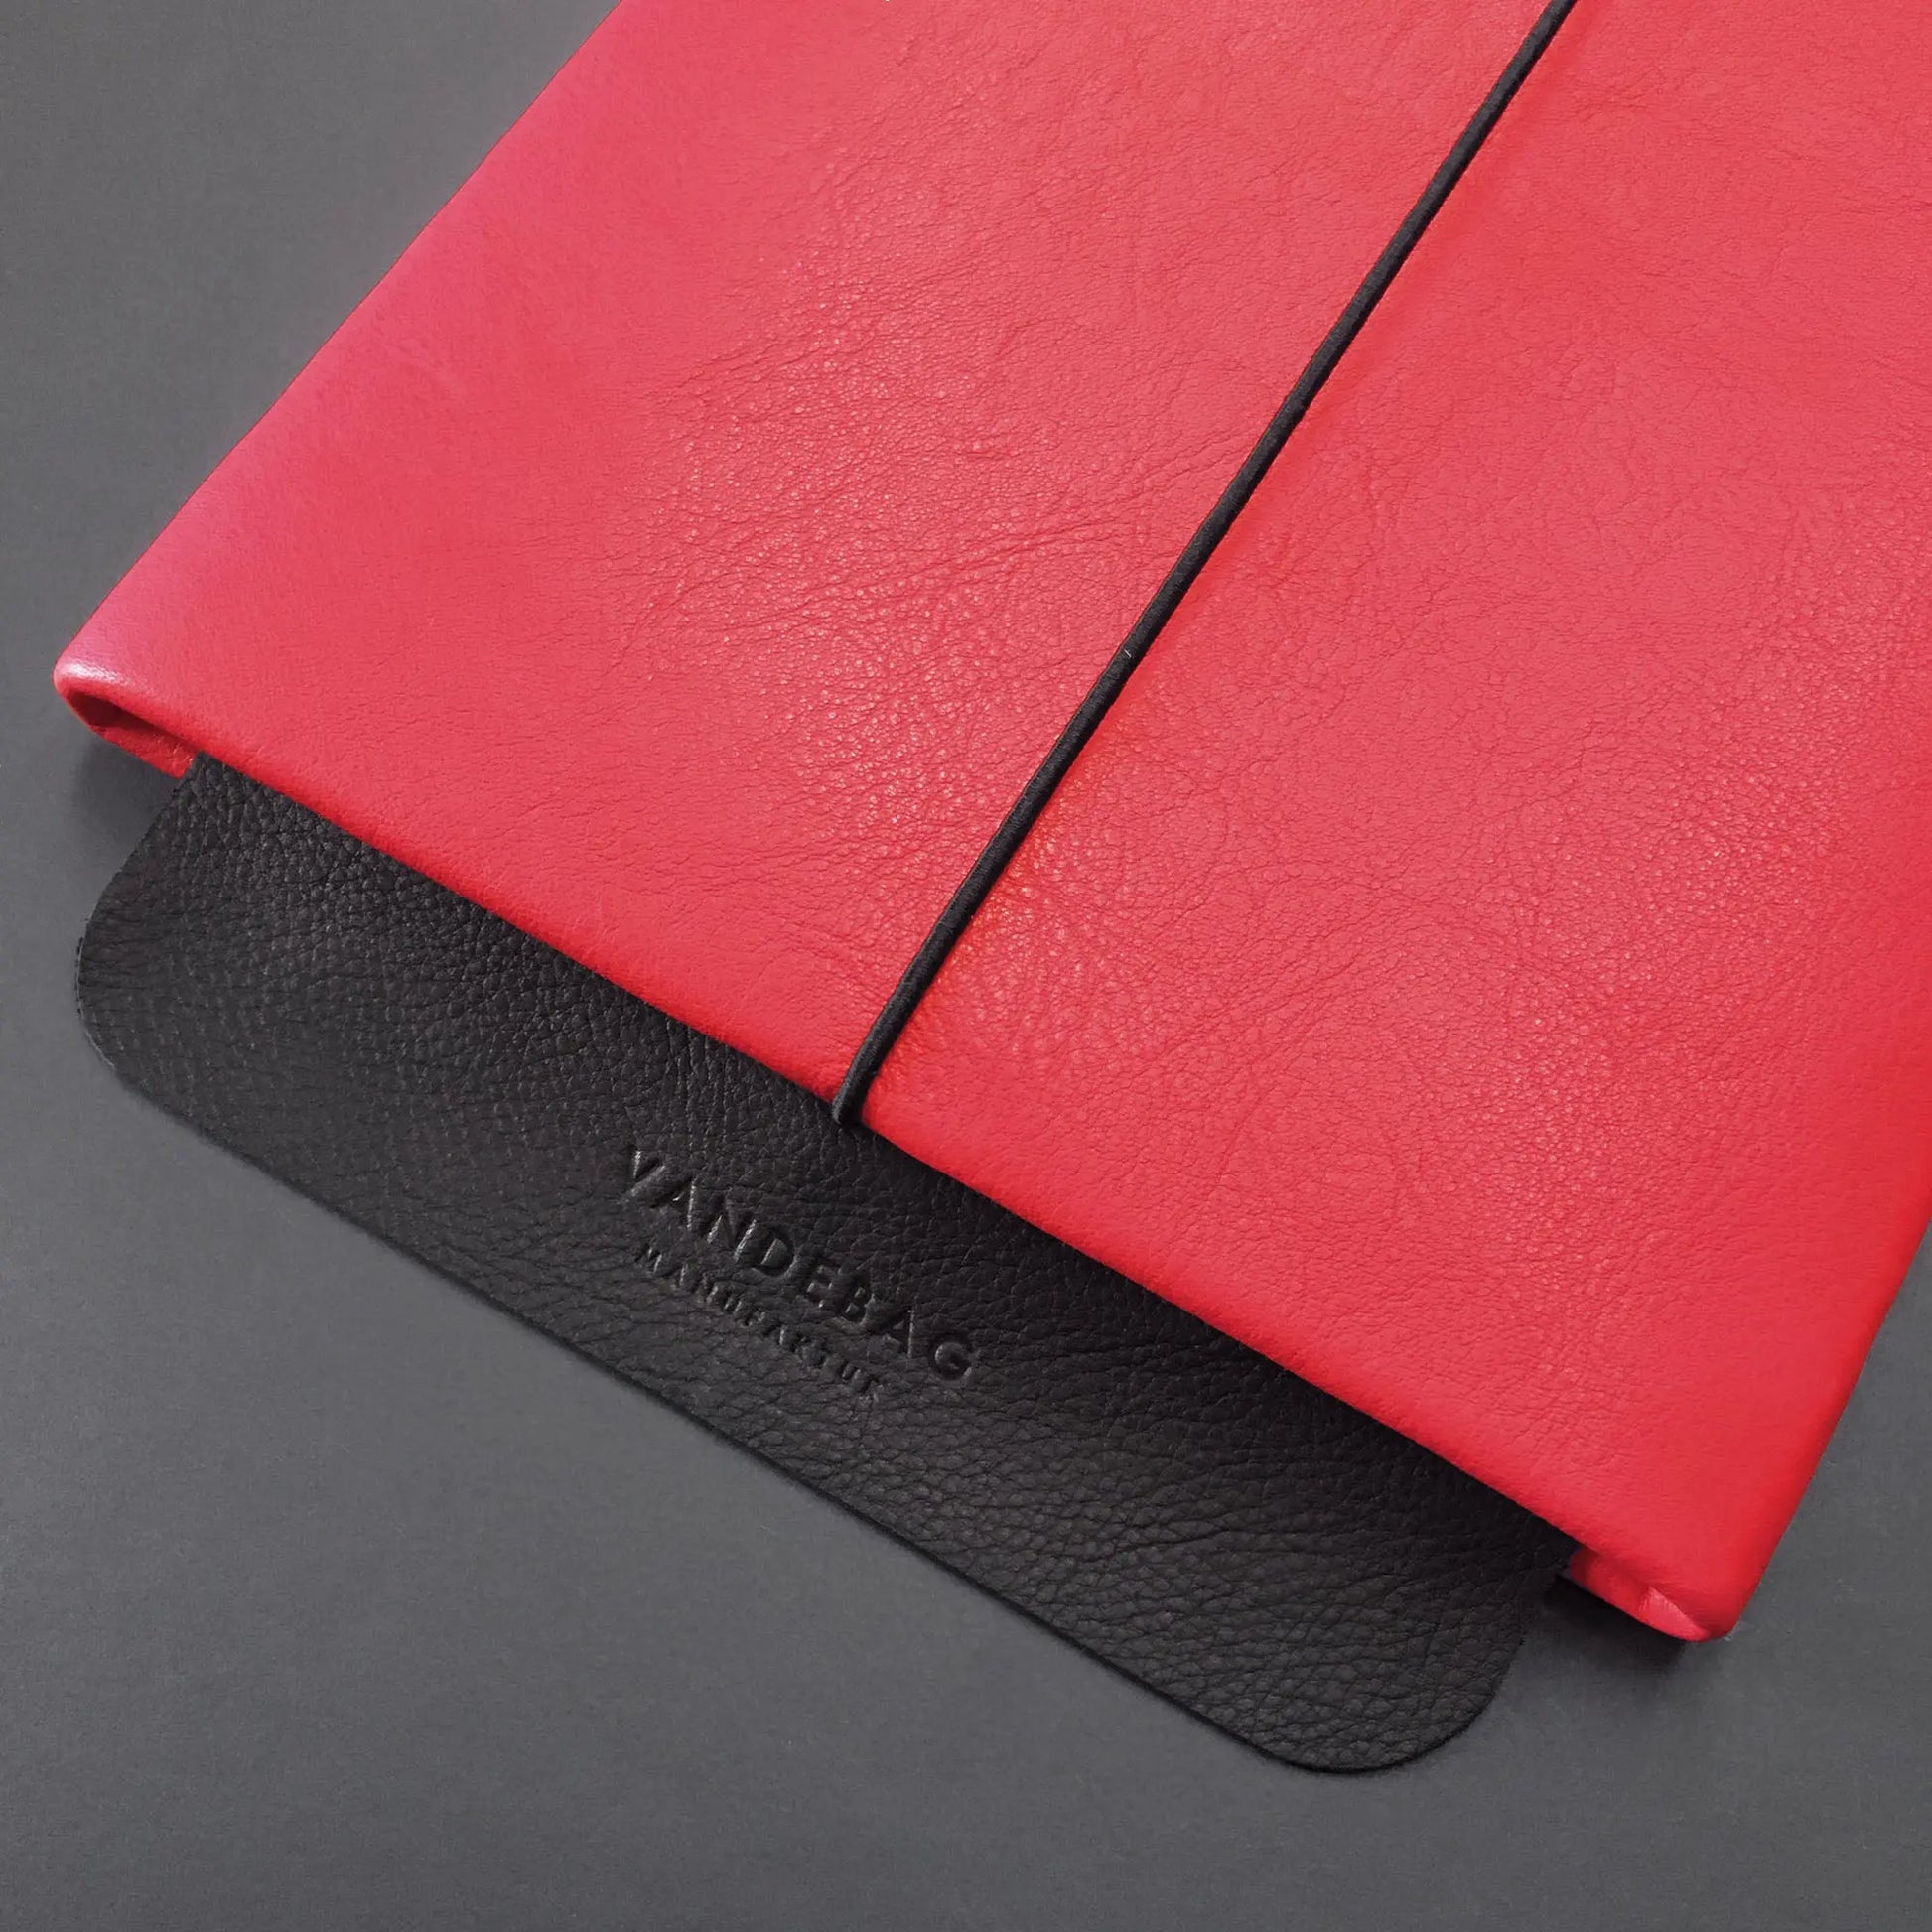 Lederhülle für ein iPad mit scharzer Lederklappe auf der Vandebag Manufaktur eingeprägt ist.